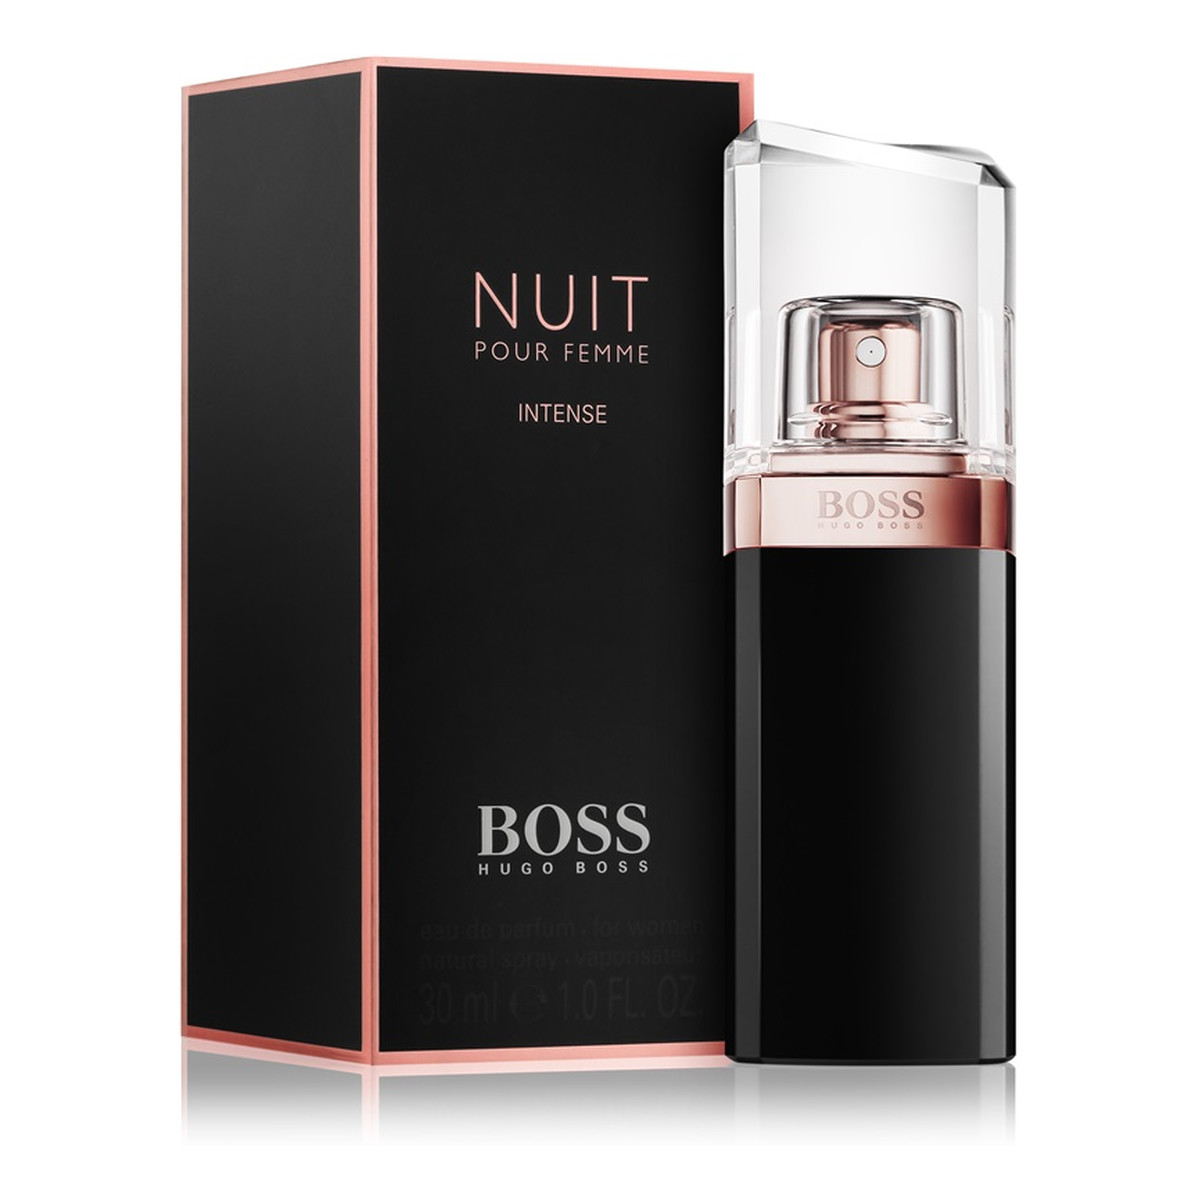 Hugo Boss Nuit Pour Femme Intense woda perfumowana dla kobiet 30ml